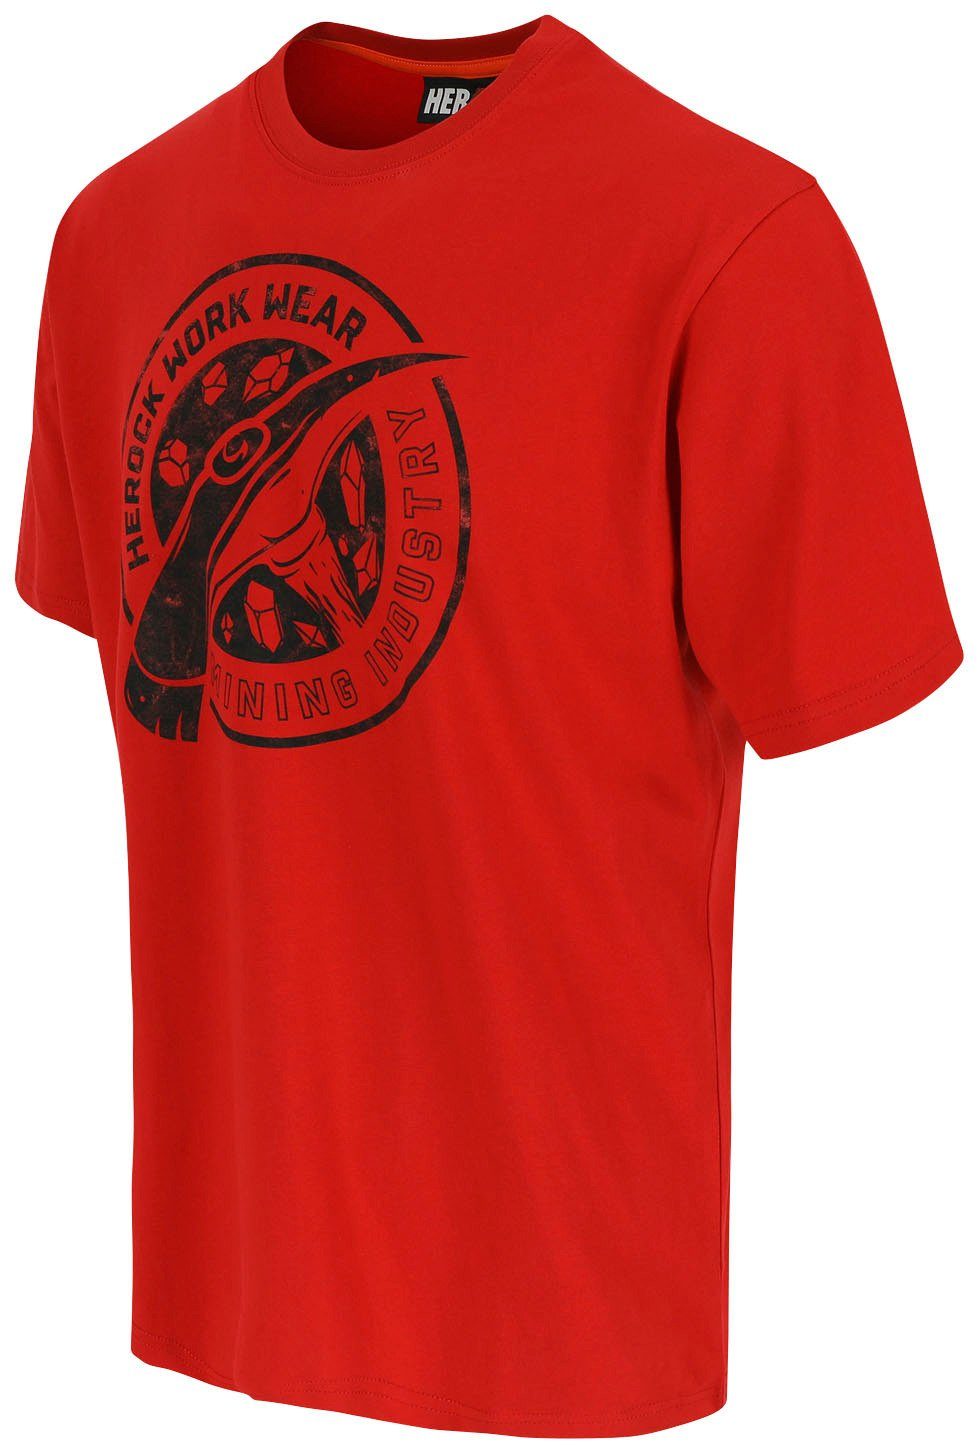 Herock T-Shirt Worker Limited Edition, in rot Farben verschiedene erhältlich